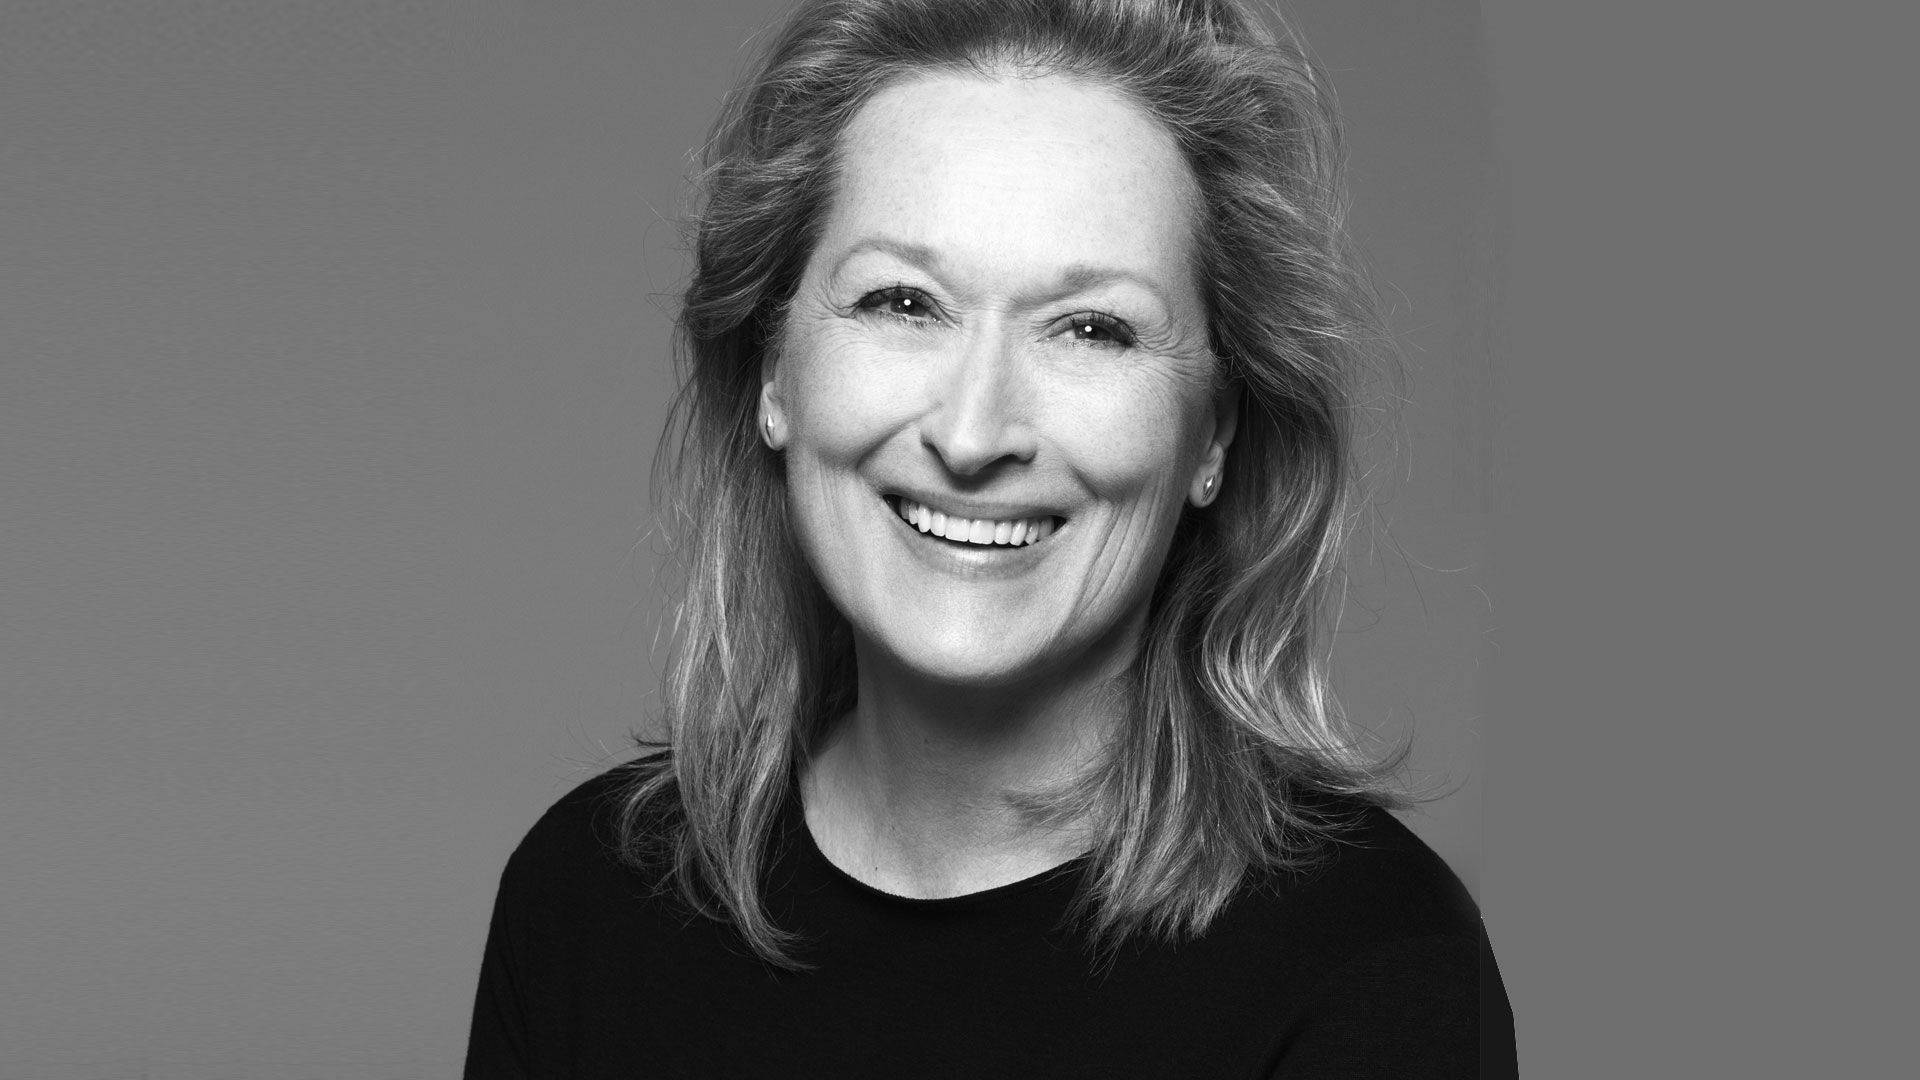 Silbernesbild Von Meryl Streep Wallpaper